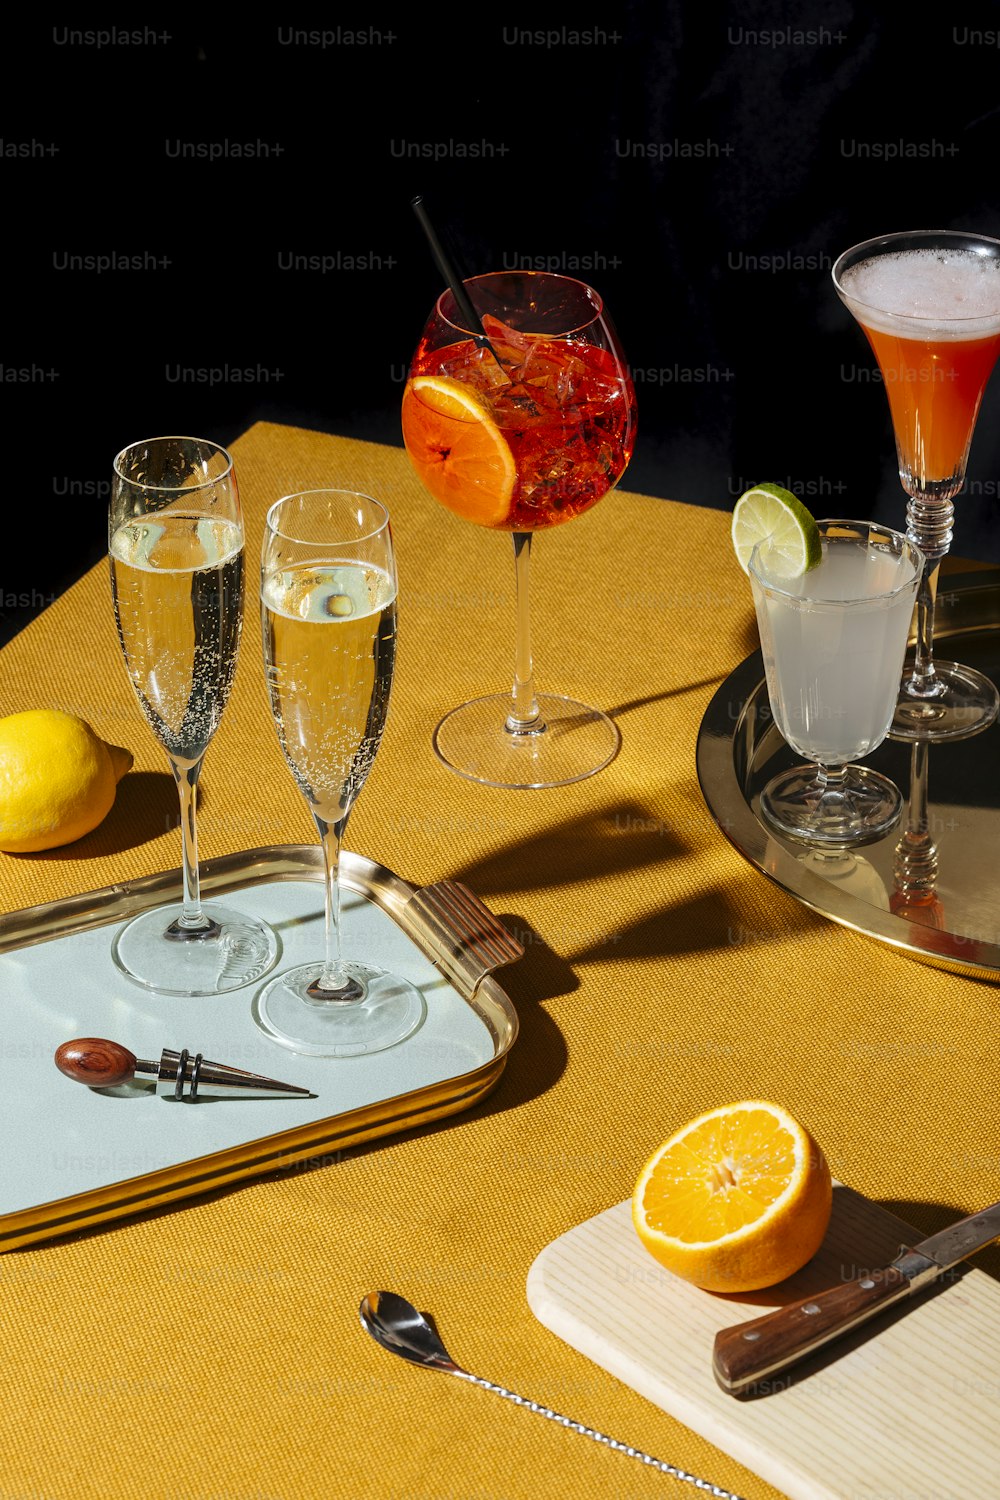 Calici da prosecco e cocktail a base di prosecco: Tintoretto, Spritz Veneziano e Lemon Sherbed. Stile pop contemporaneo